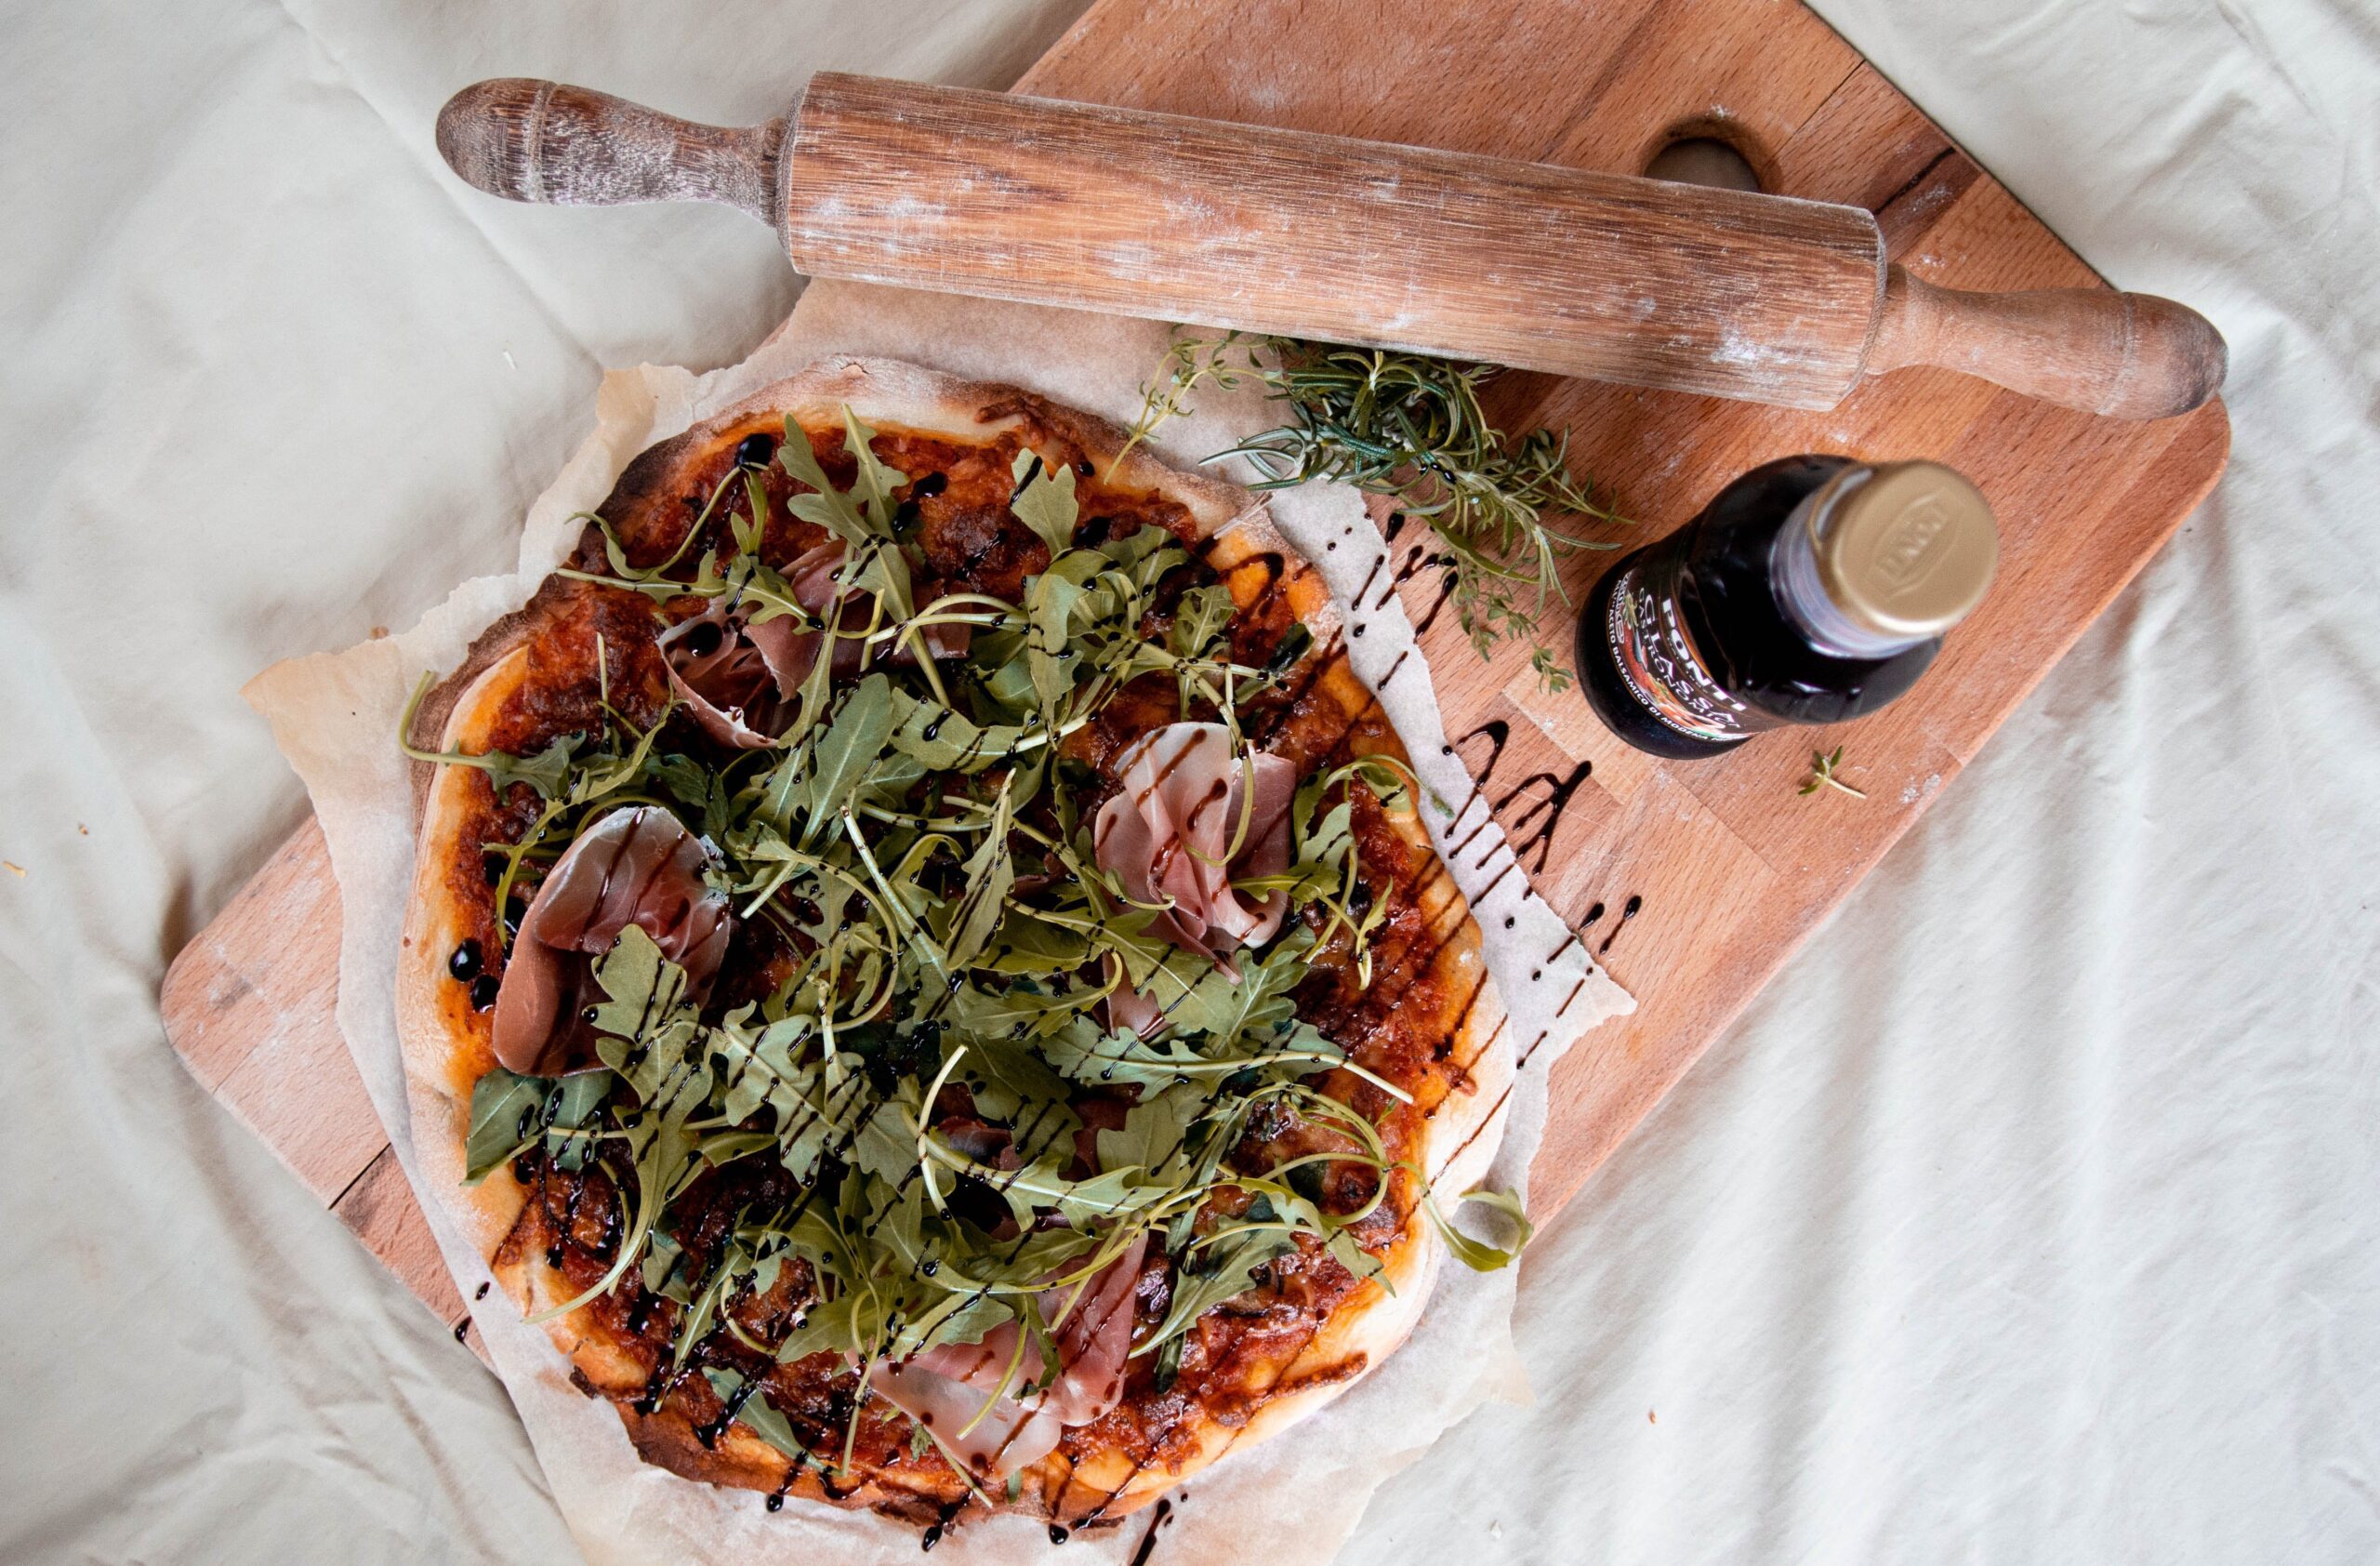 På billedet ses en Prosciutto Pizza liggende på et skærrebræt. Ved siden af står en balsamico dressing.